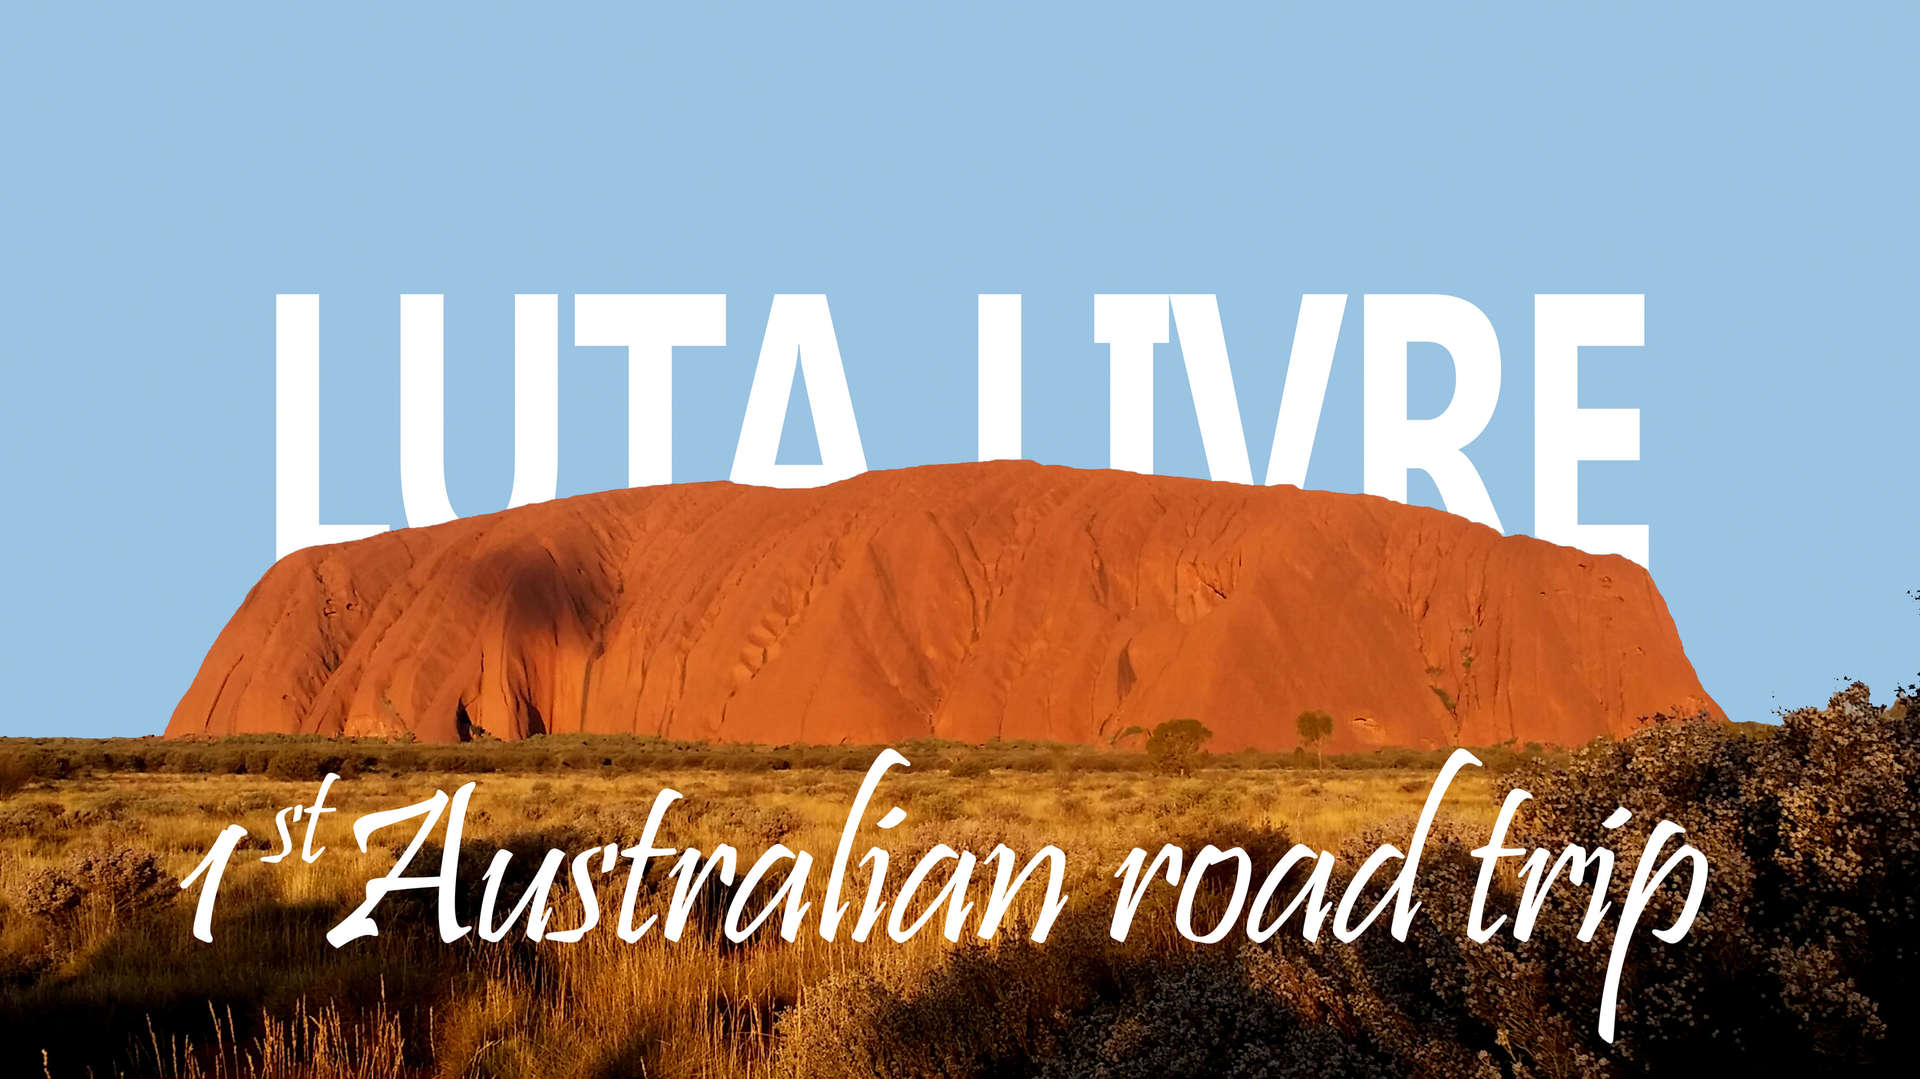 1st-australian-road-trip-luta-livre